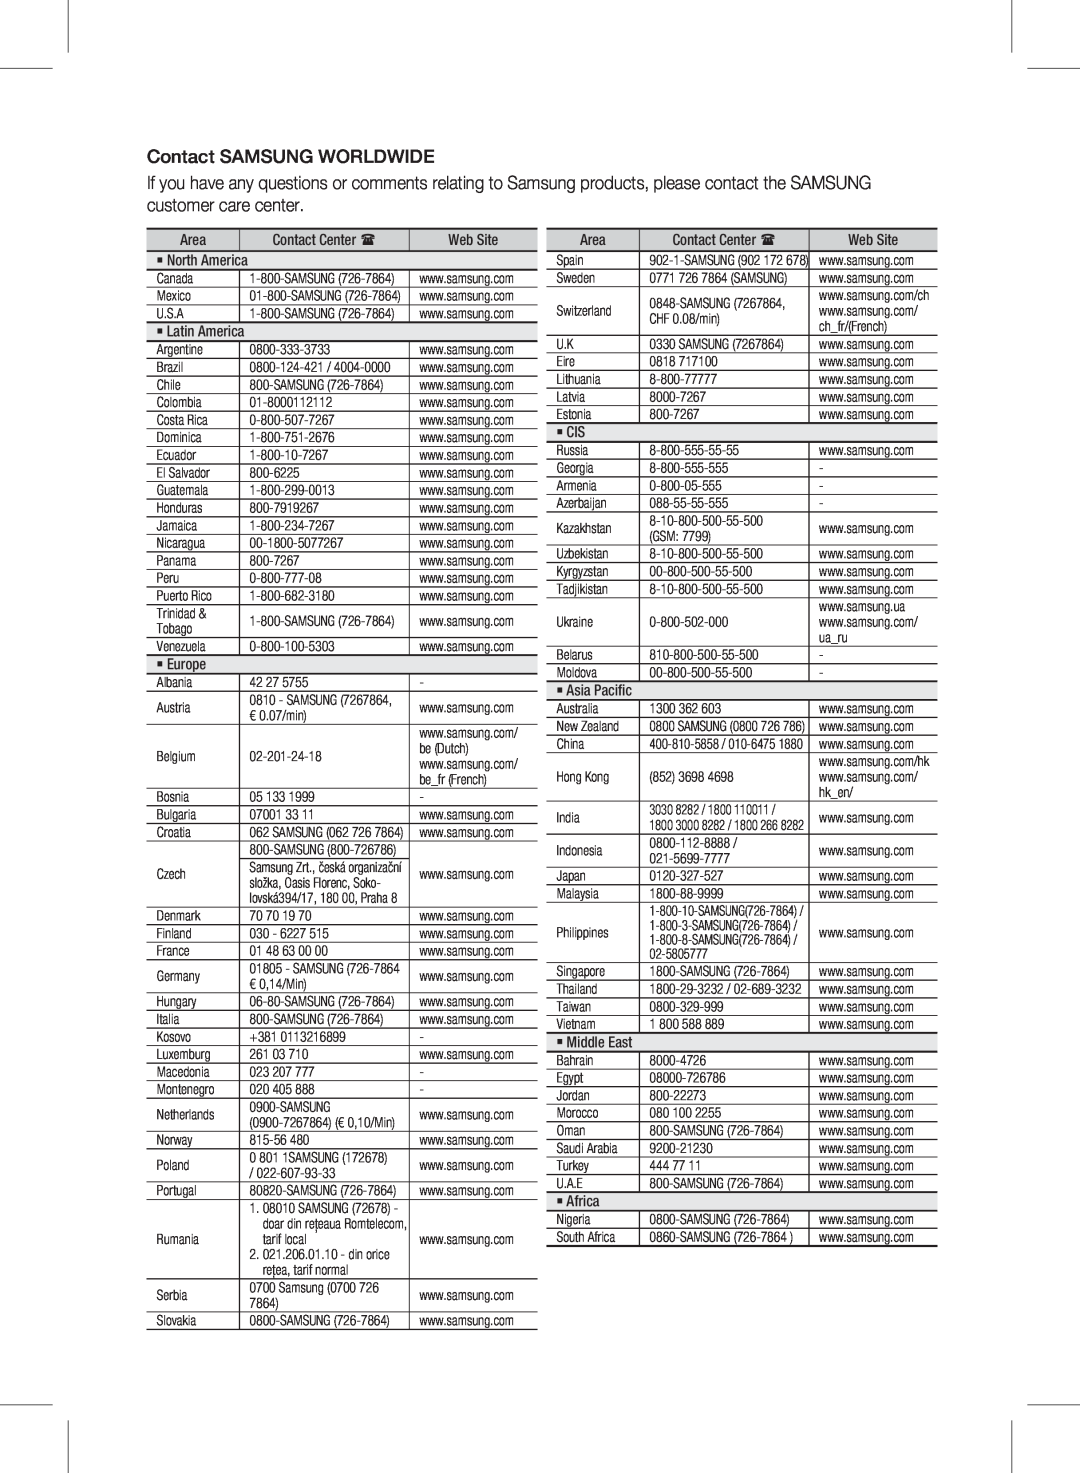 Siemens HW-D450 user manual Contact SAMSUNG WORLDWIDE 